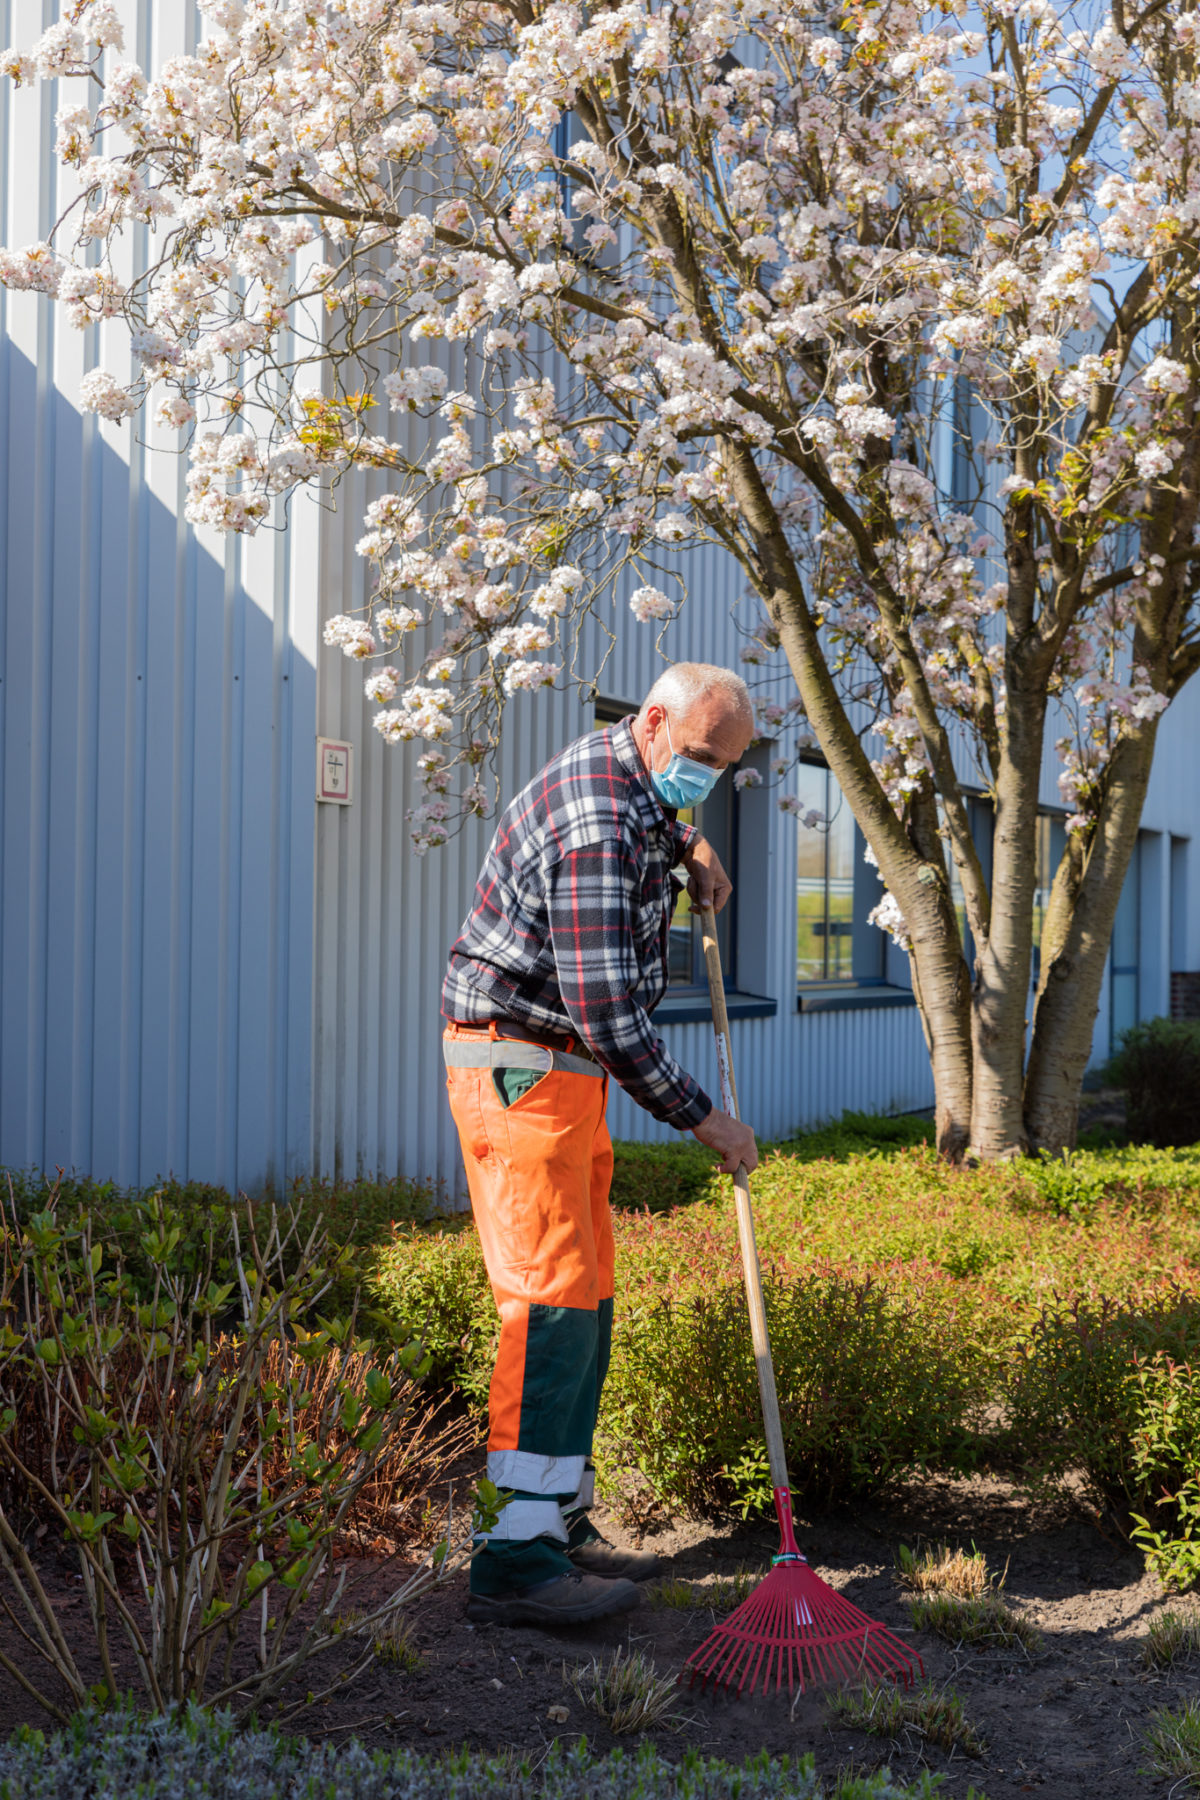 Een medewerker van Bewel is bezig met grond om te spitten in de tuin van een bedrijf. Hij staat onder een kleine boom vol bloesems.